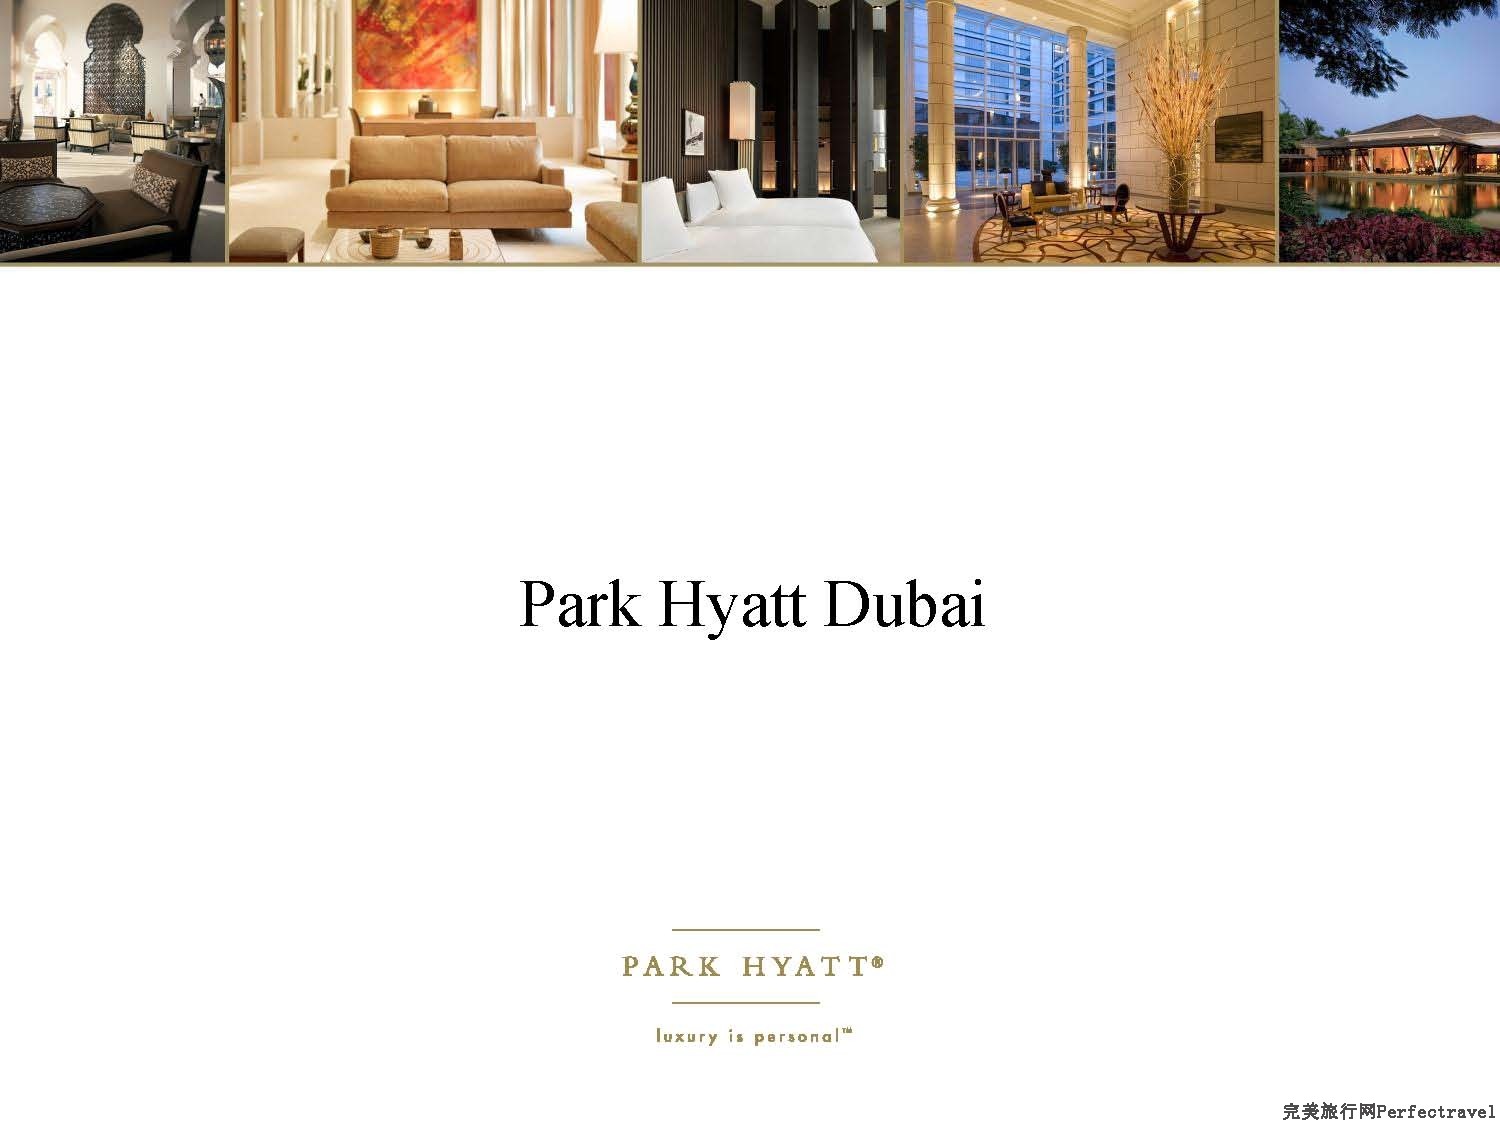 Park Hyatt Dubai presentation - 2013_Page_01.jpg